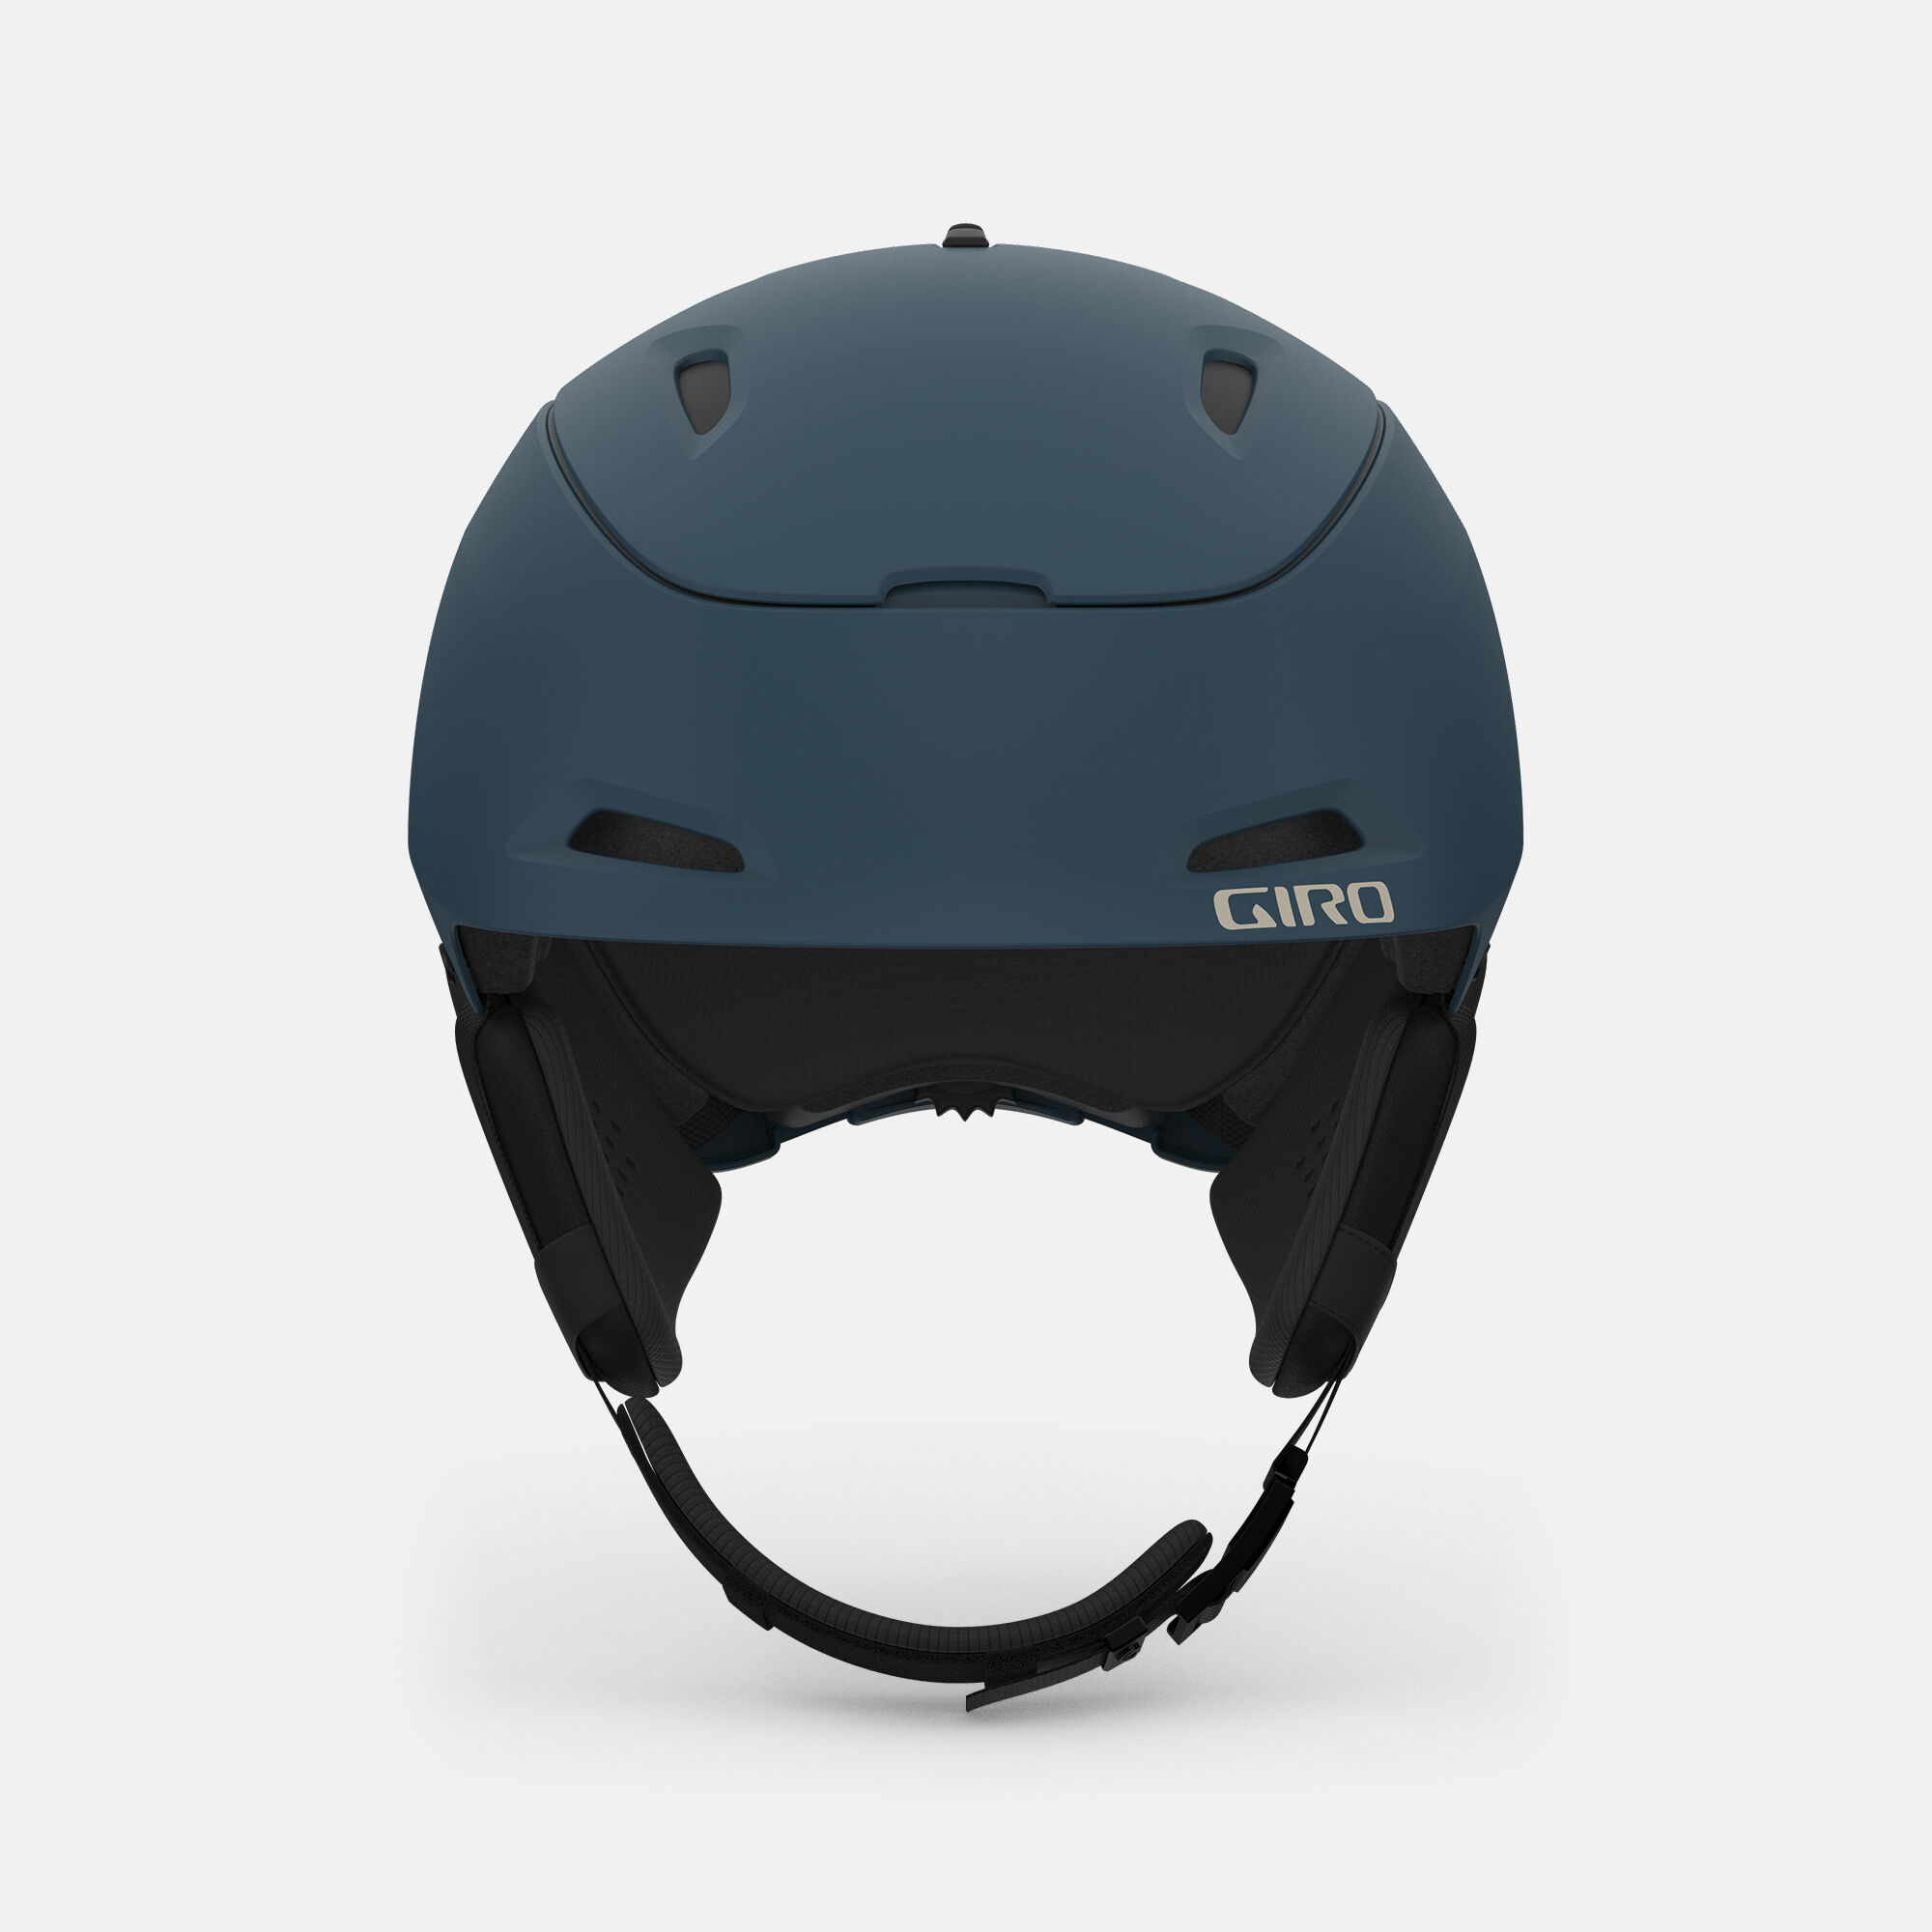 Range Mips Helmet